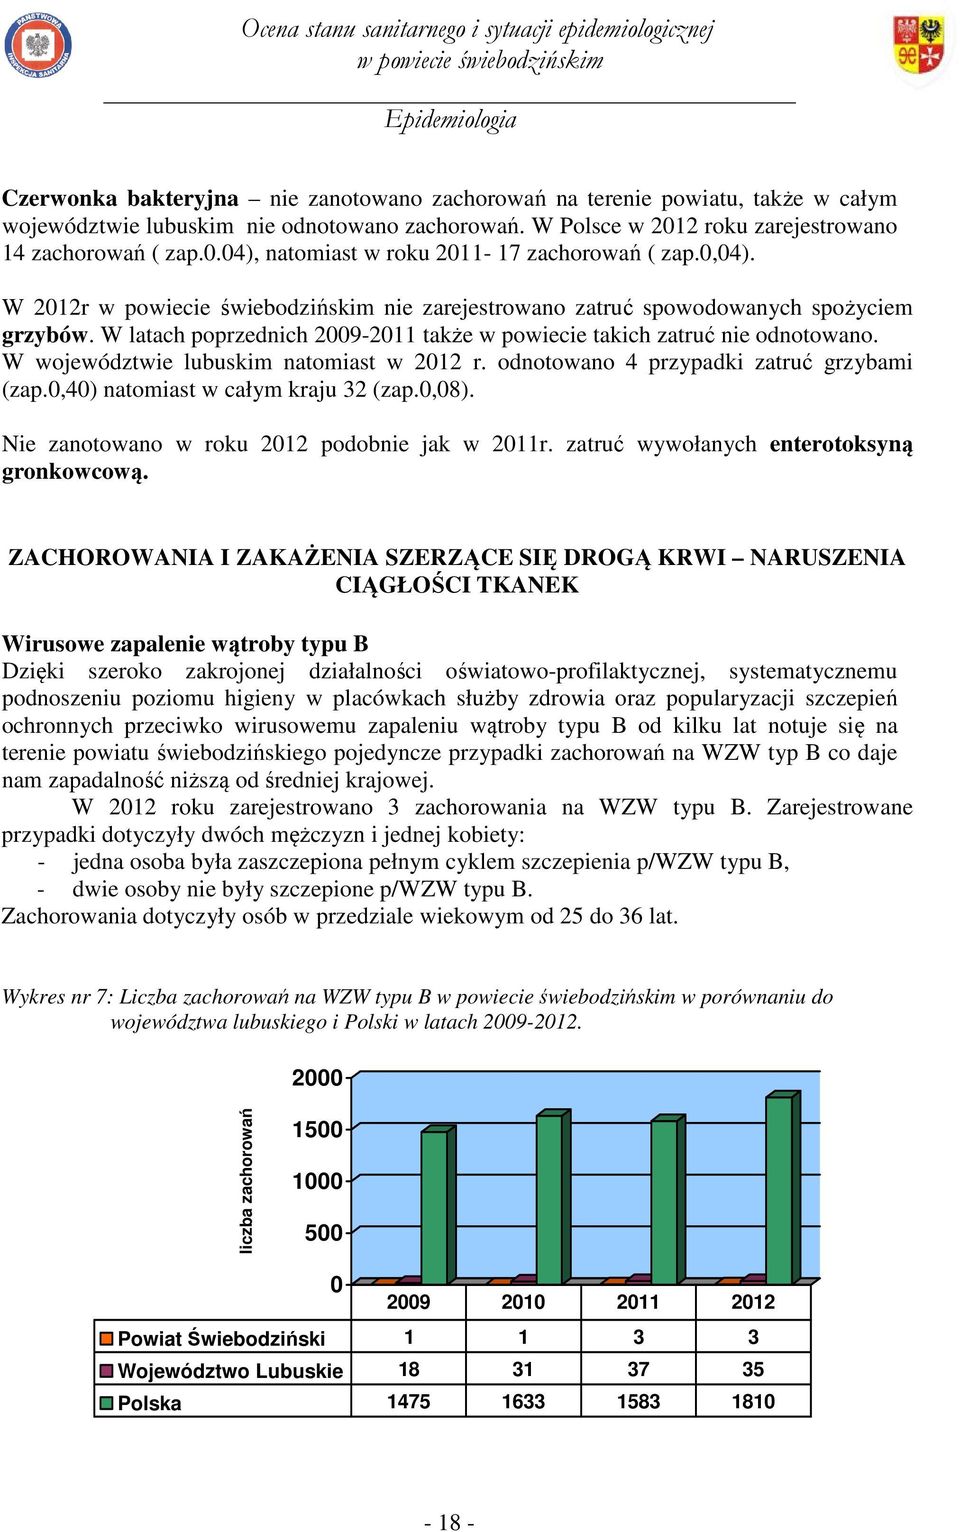 W województwie lubuskim natomiast w 2012 r. odnotowano 4 przypadki zatruć grzybami (zap.0,40) natomiast w całym kraju 32 (zap.0,08). Nie zanotowano w roku 2012 podobnie jak w 2011r.